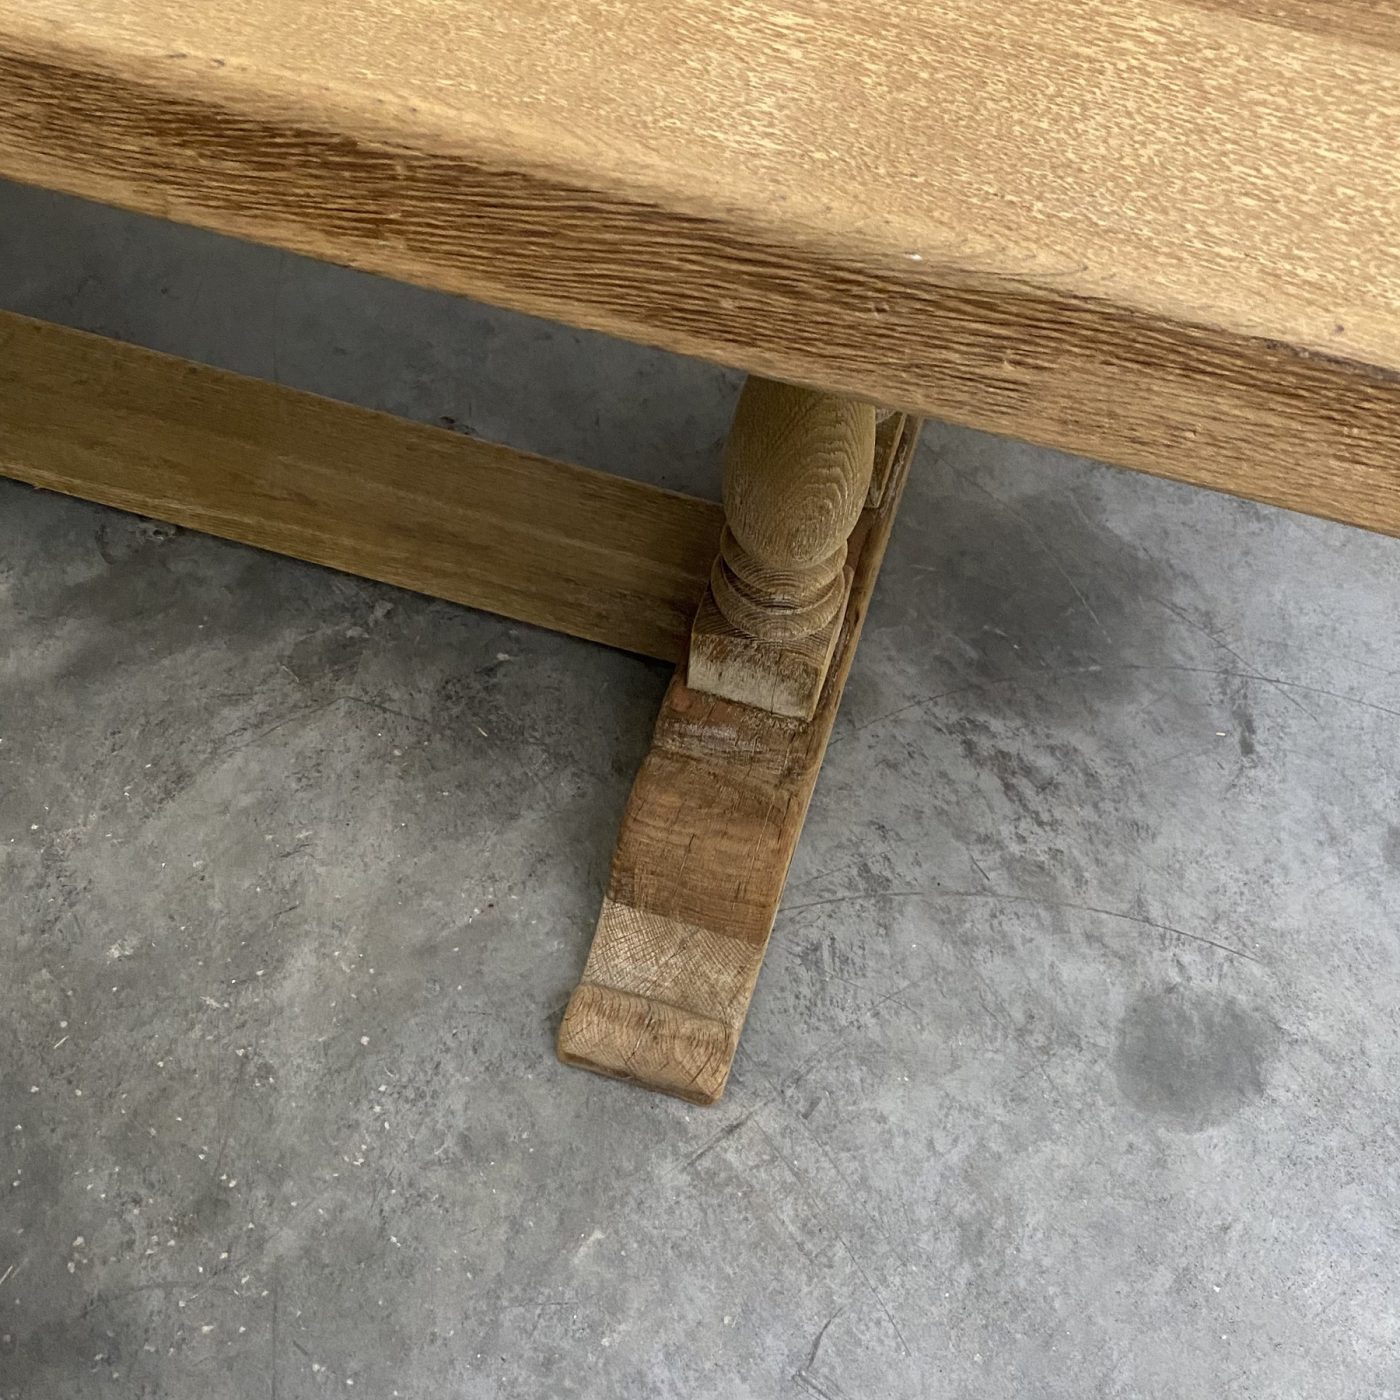 objet-vagabond-oak-table0000